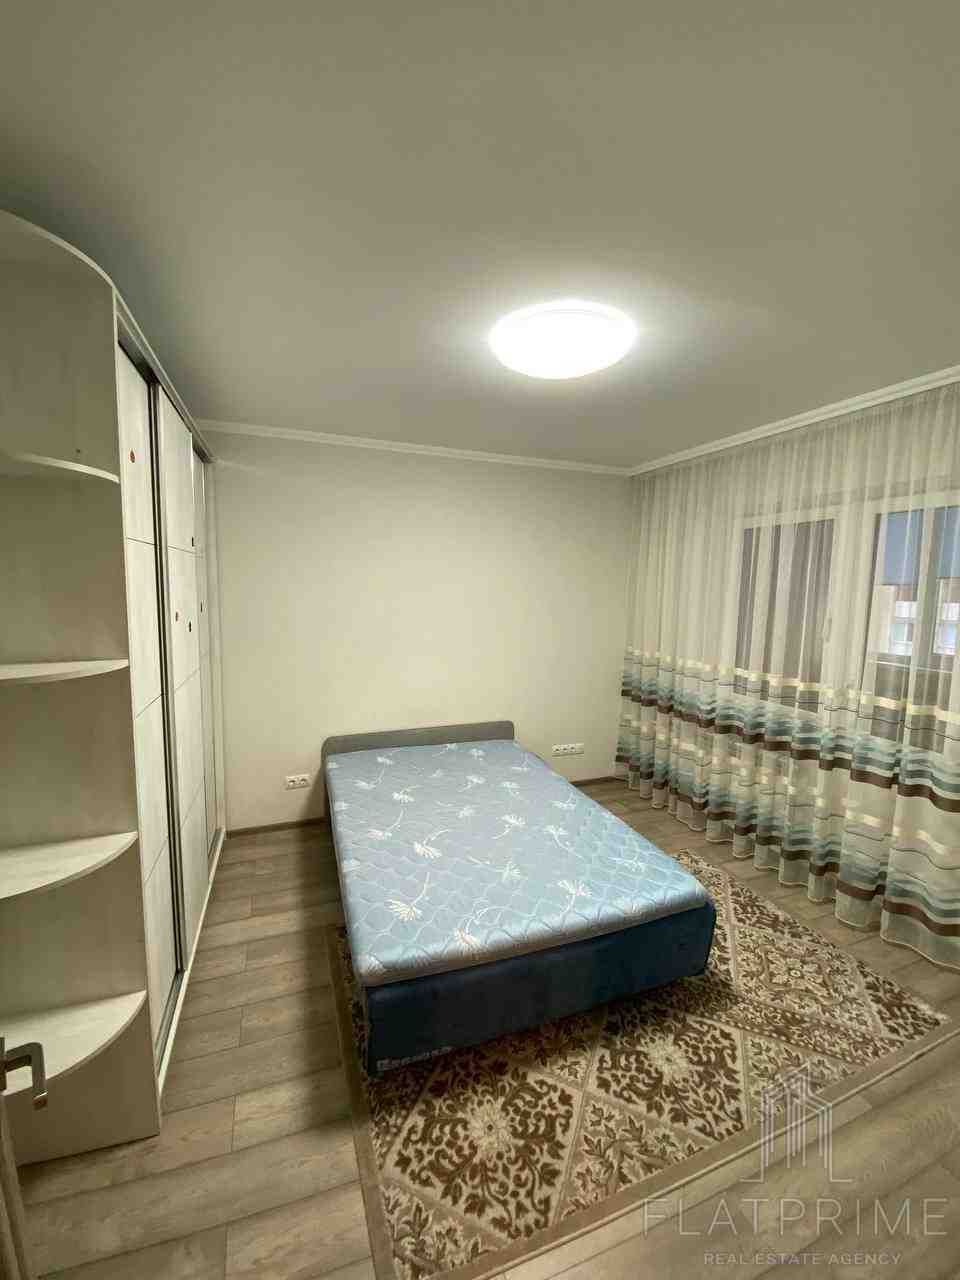 2-кімнатна квартира в Дніпровському районі шукає  господаря!